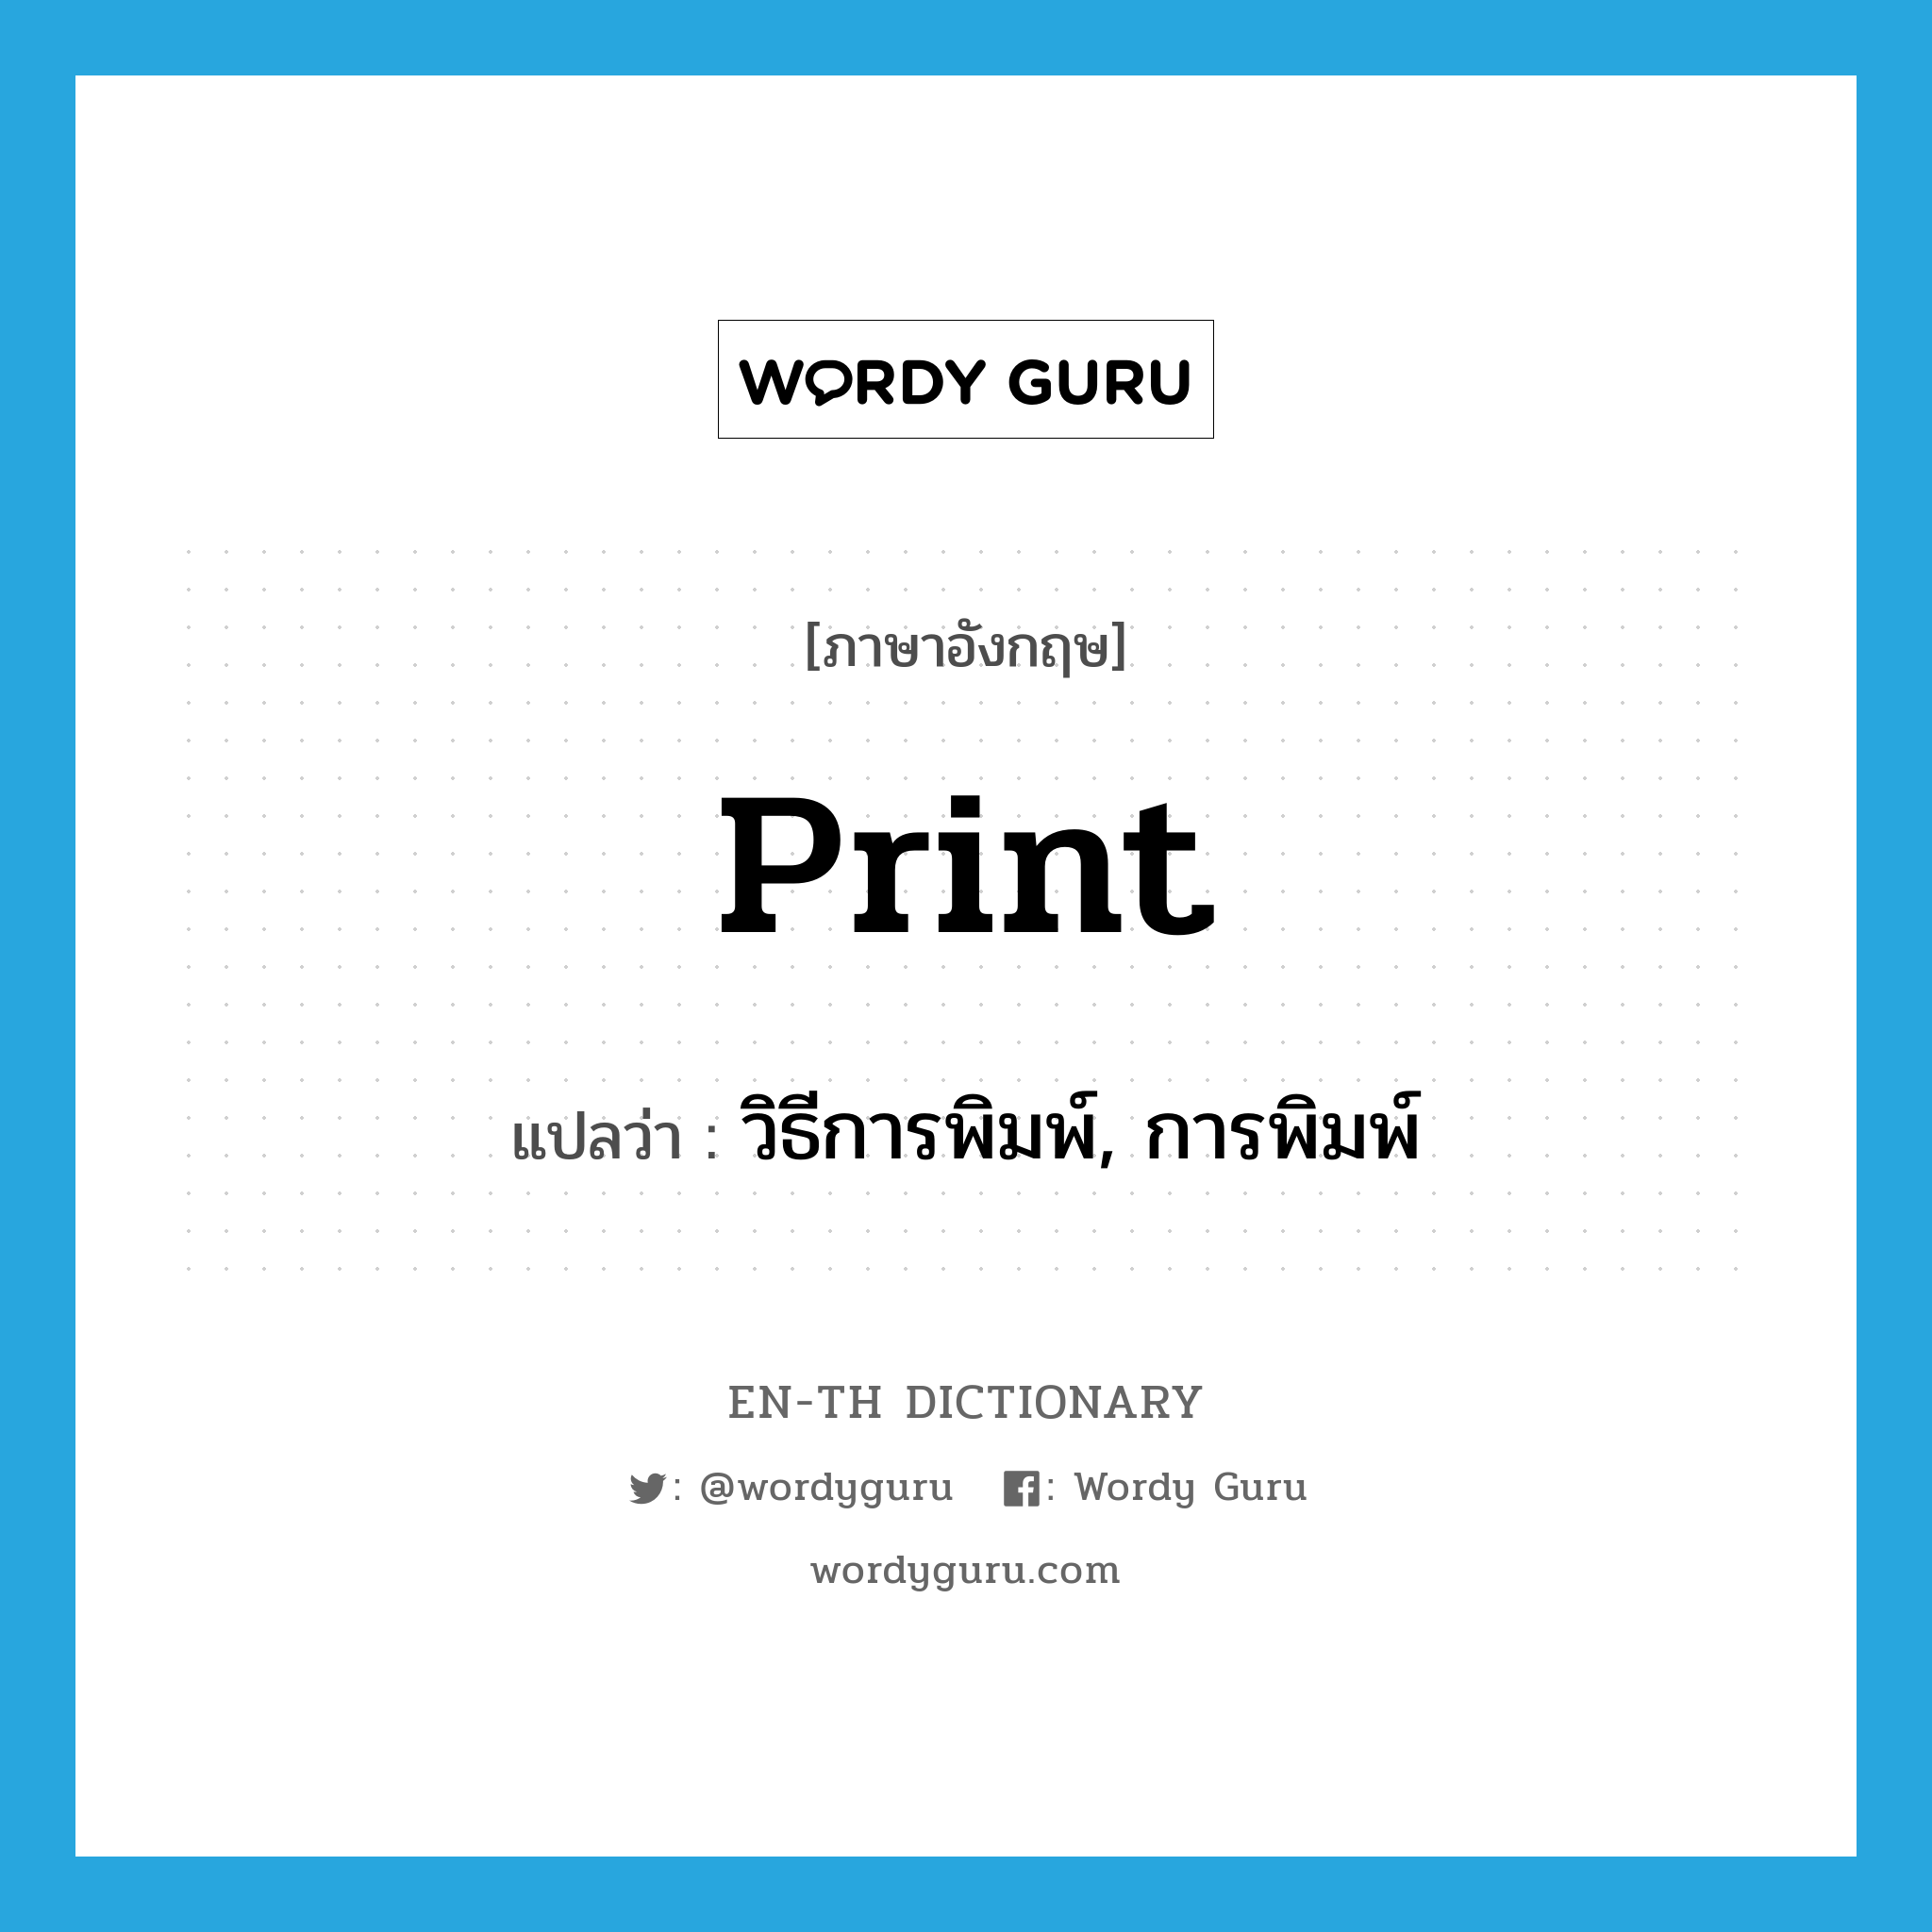 print แปลว่า?, คำศัพท์ภาษาอังกฤษ print แปลว่า วิธีการพิมพ์, การพิมพ์ ประเภท N หมวด N